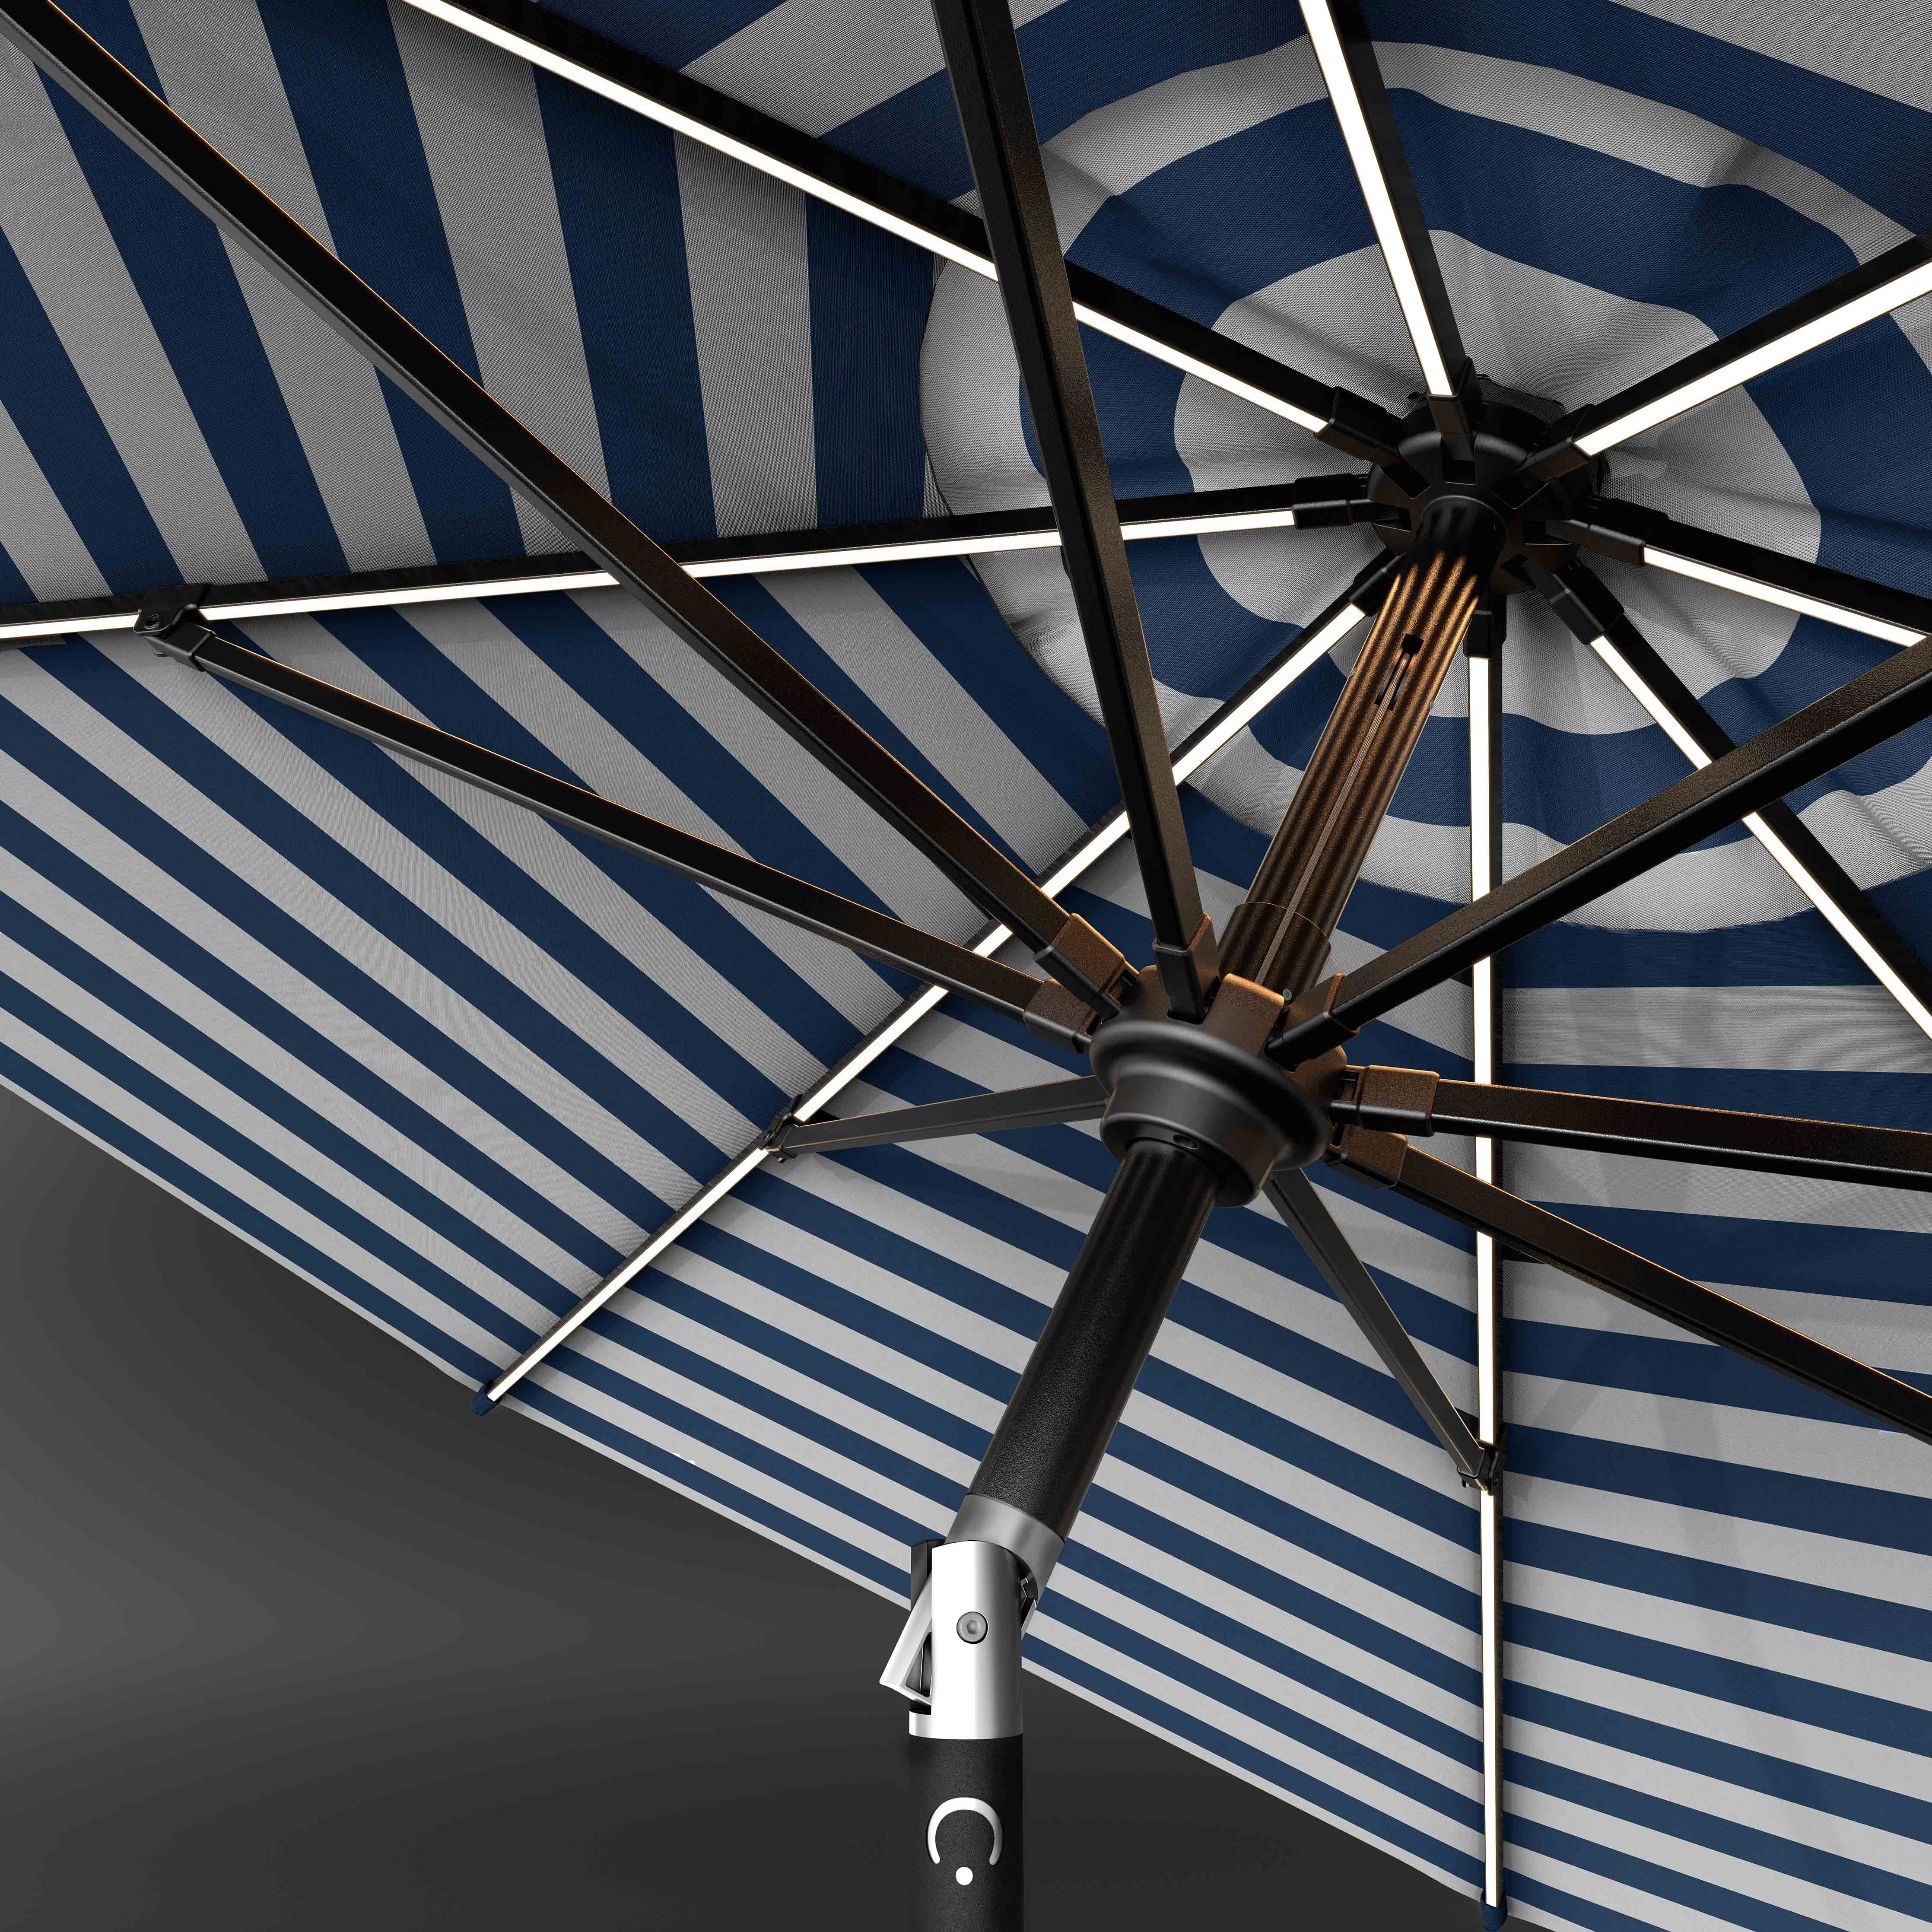 El LED Swilt™ - Regata Sunbrella Cabana